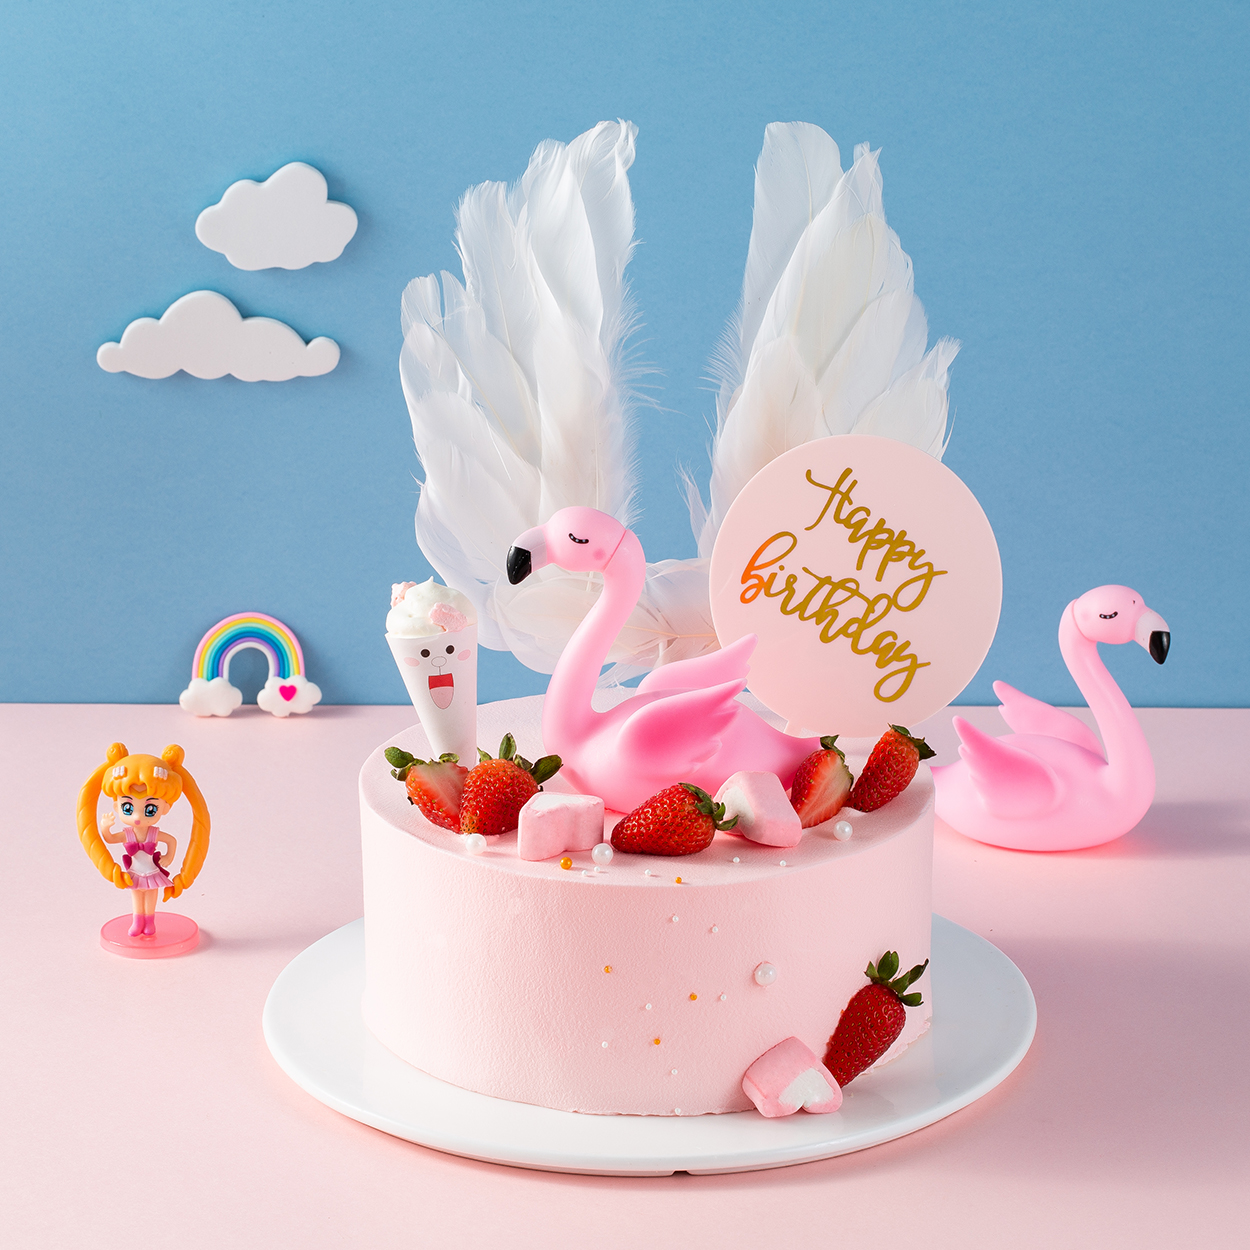 青春永驻-粉色天使蛋糕